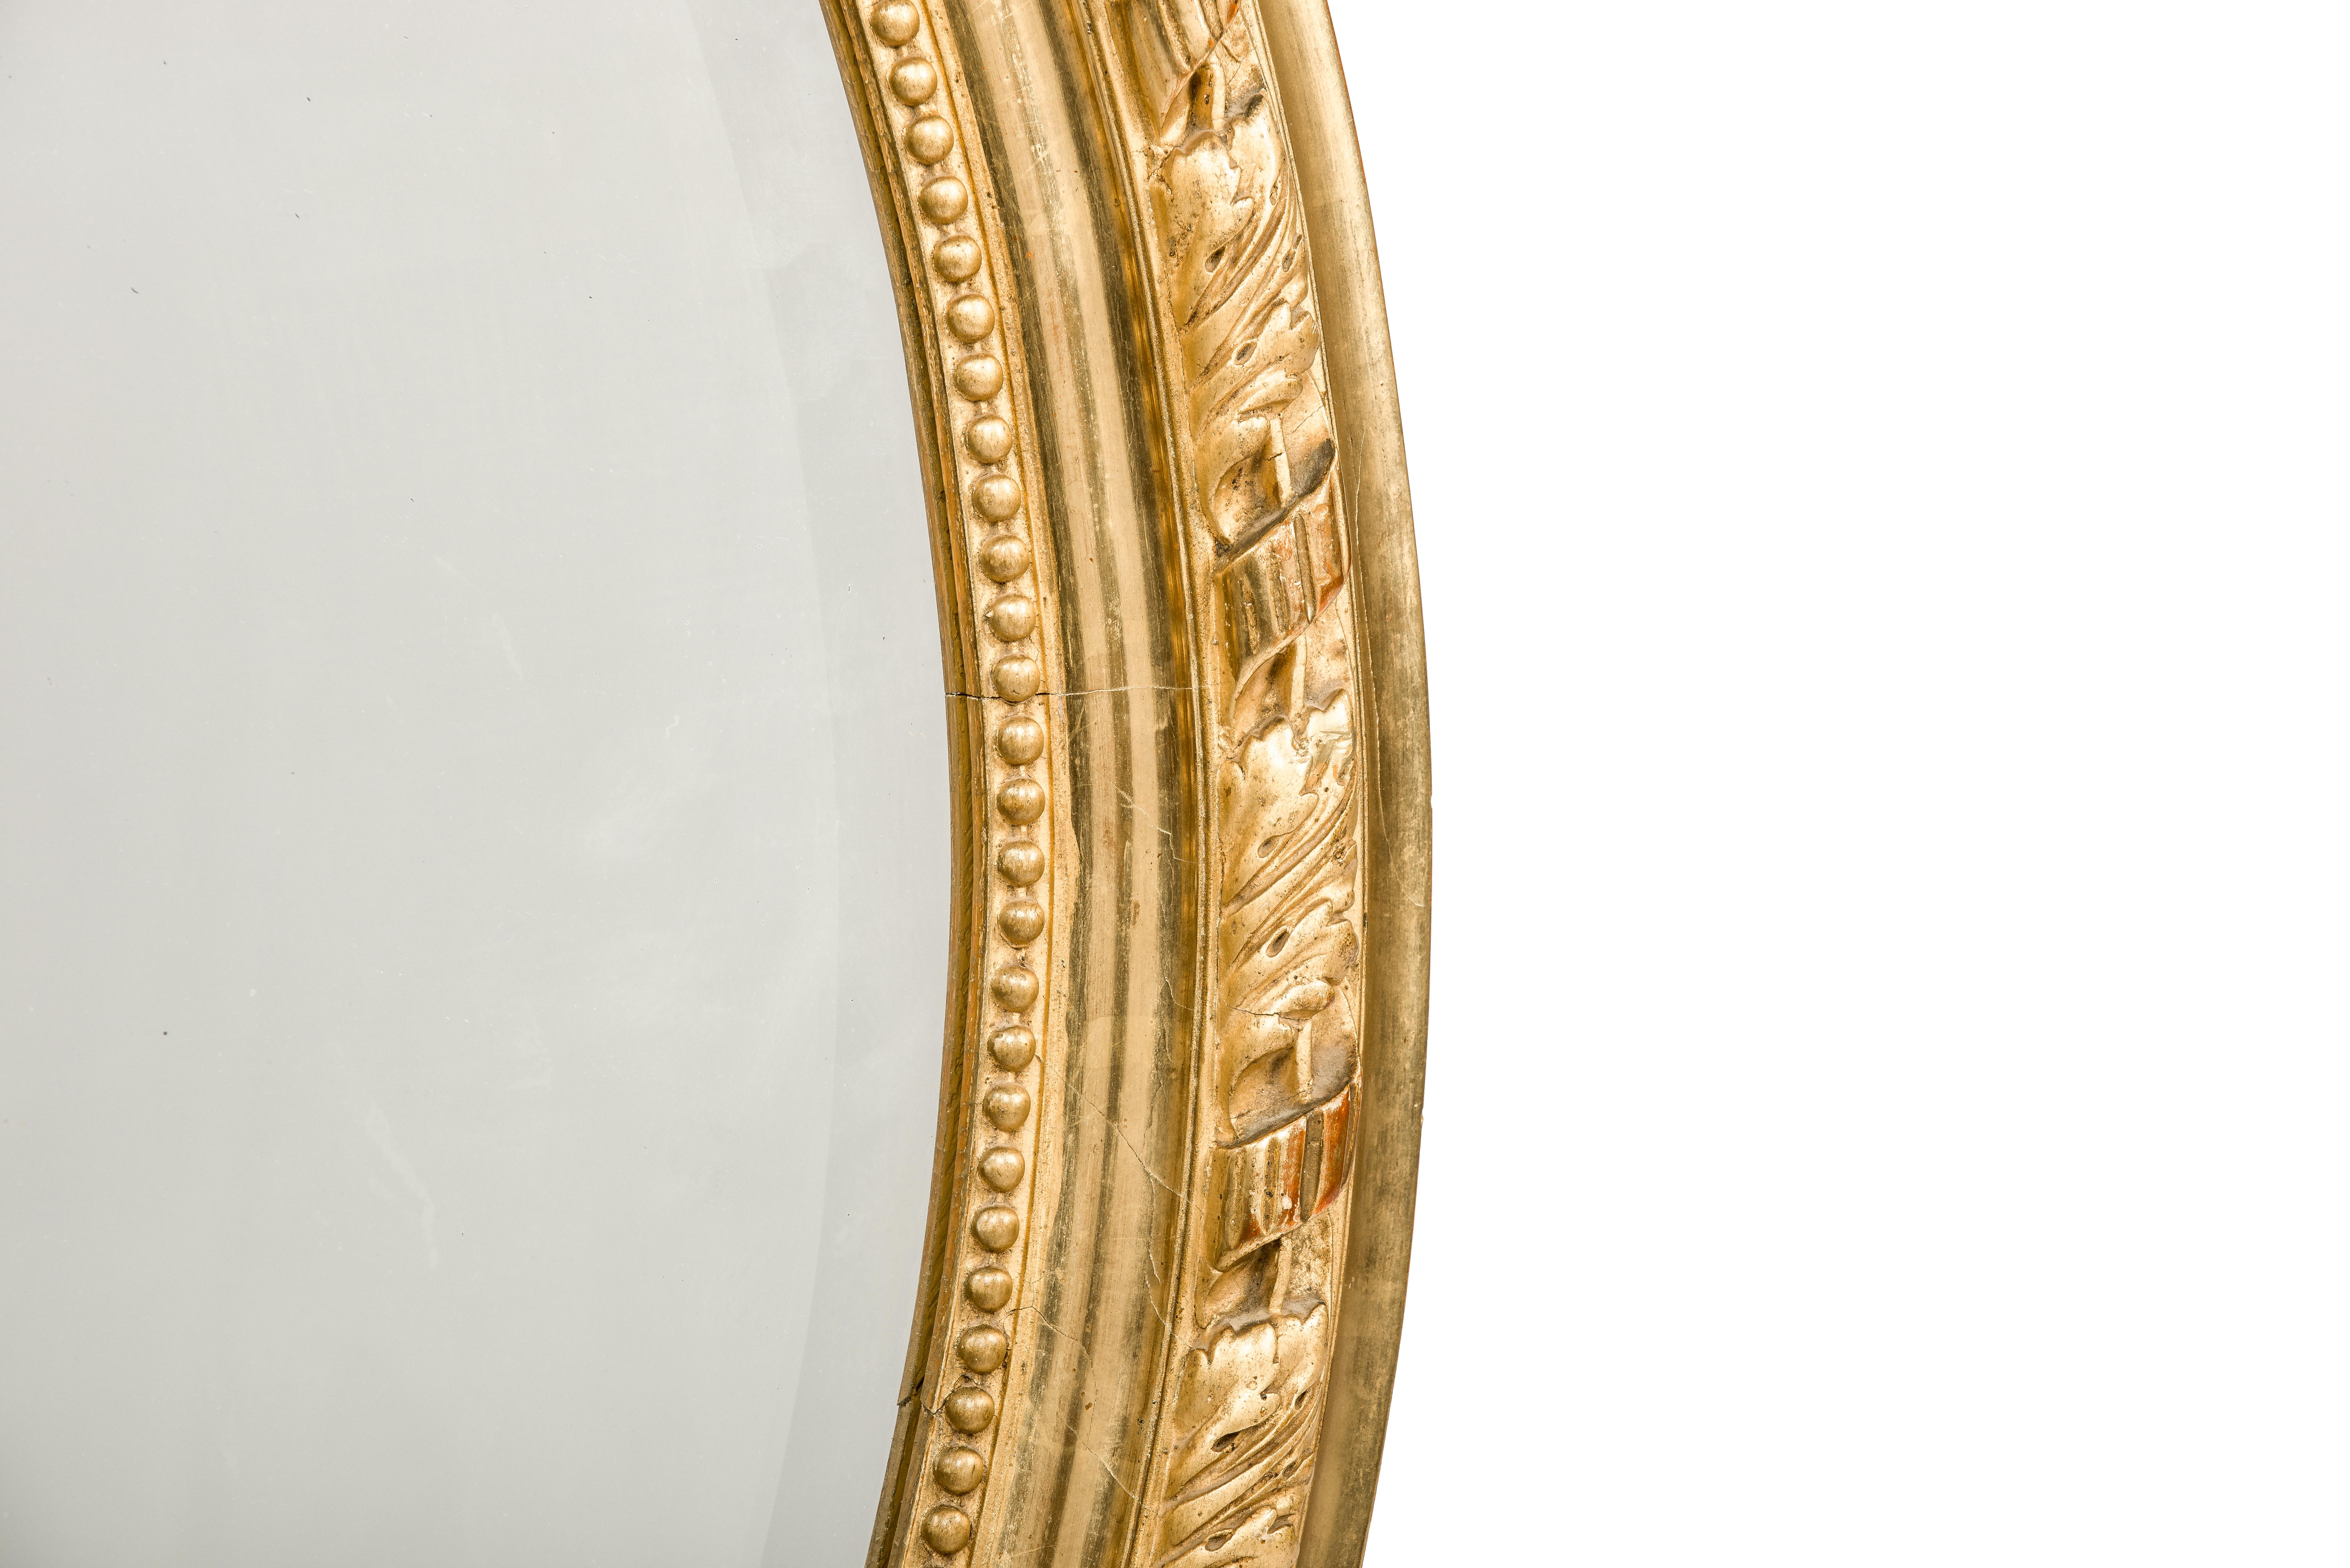 Nous vous proposons ici un magnifique miroir ovale antique doré à la feuille d'or qui a été fabriqué en France à la fin du 19e siècle. Le miroir a un cadre ovale en pin massif, lissé au gesso et décoré d'ornements. Le cimier supérieur présente une